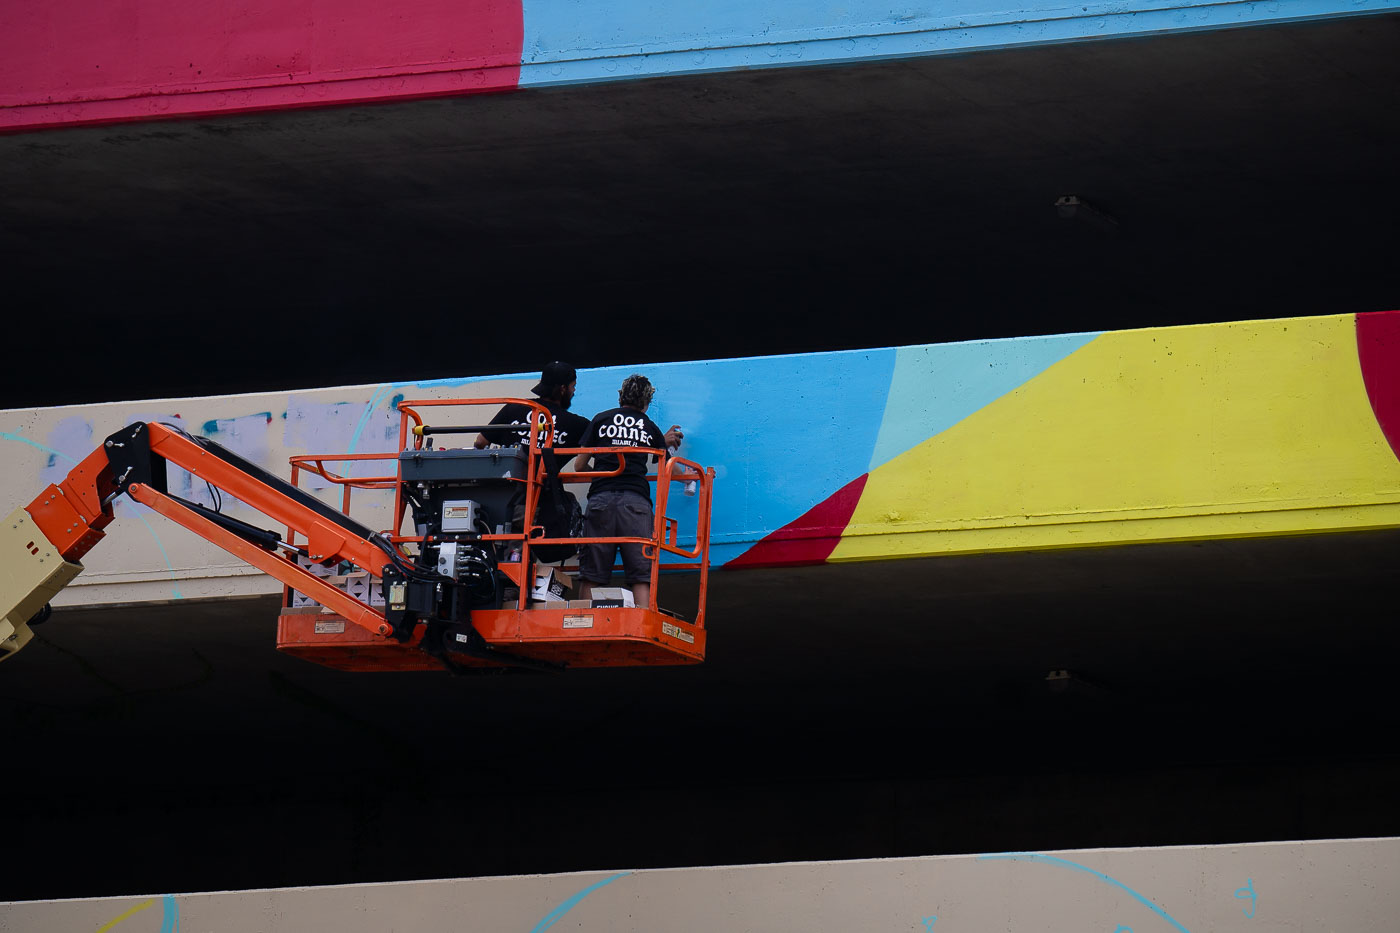 Artists paint a mural on parking garage